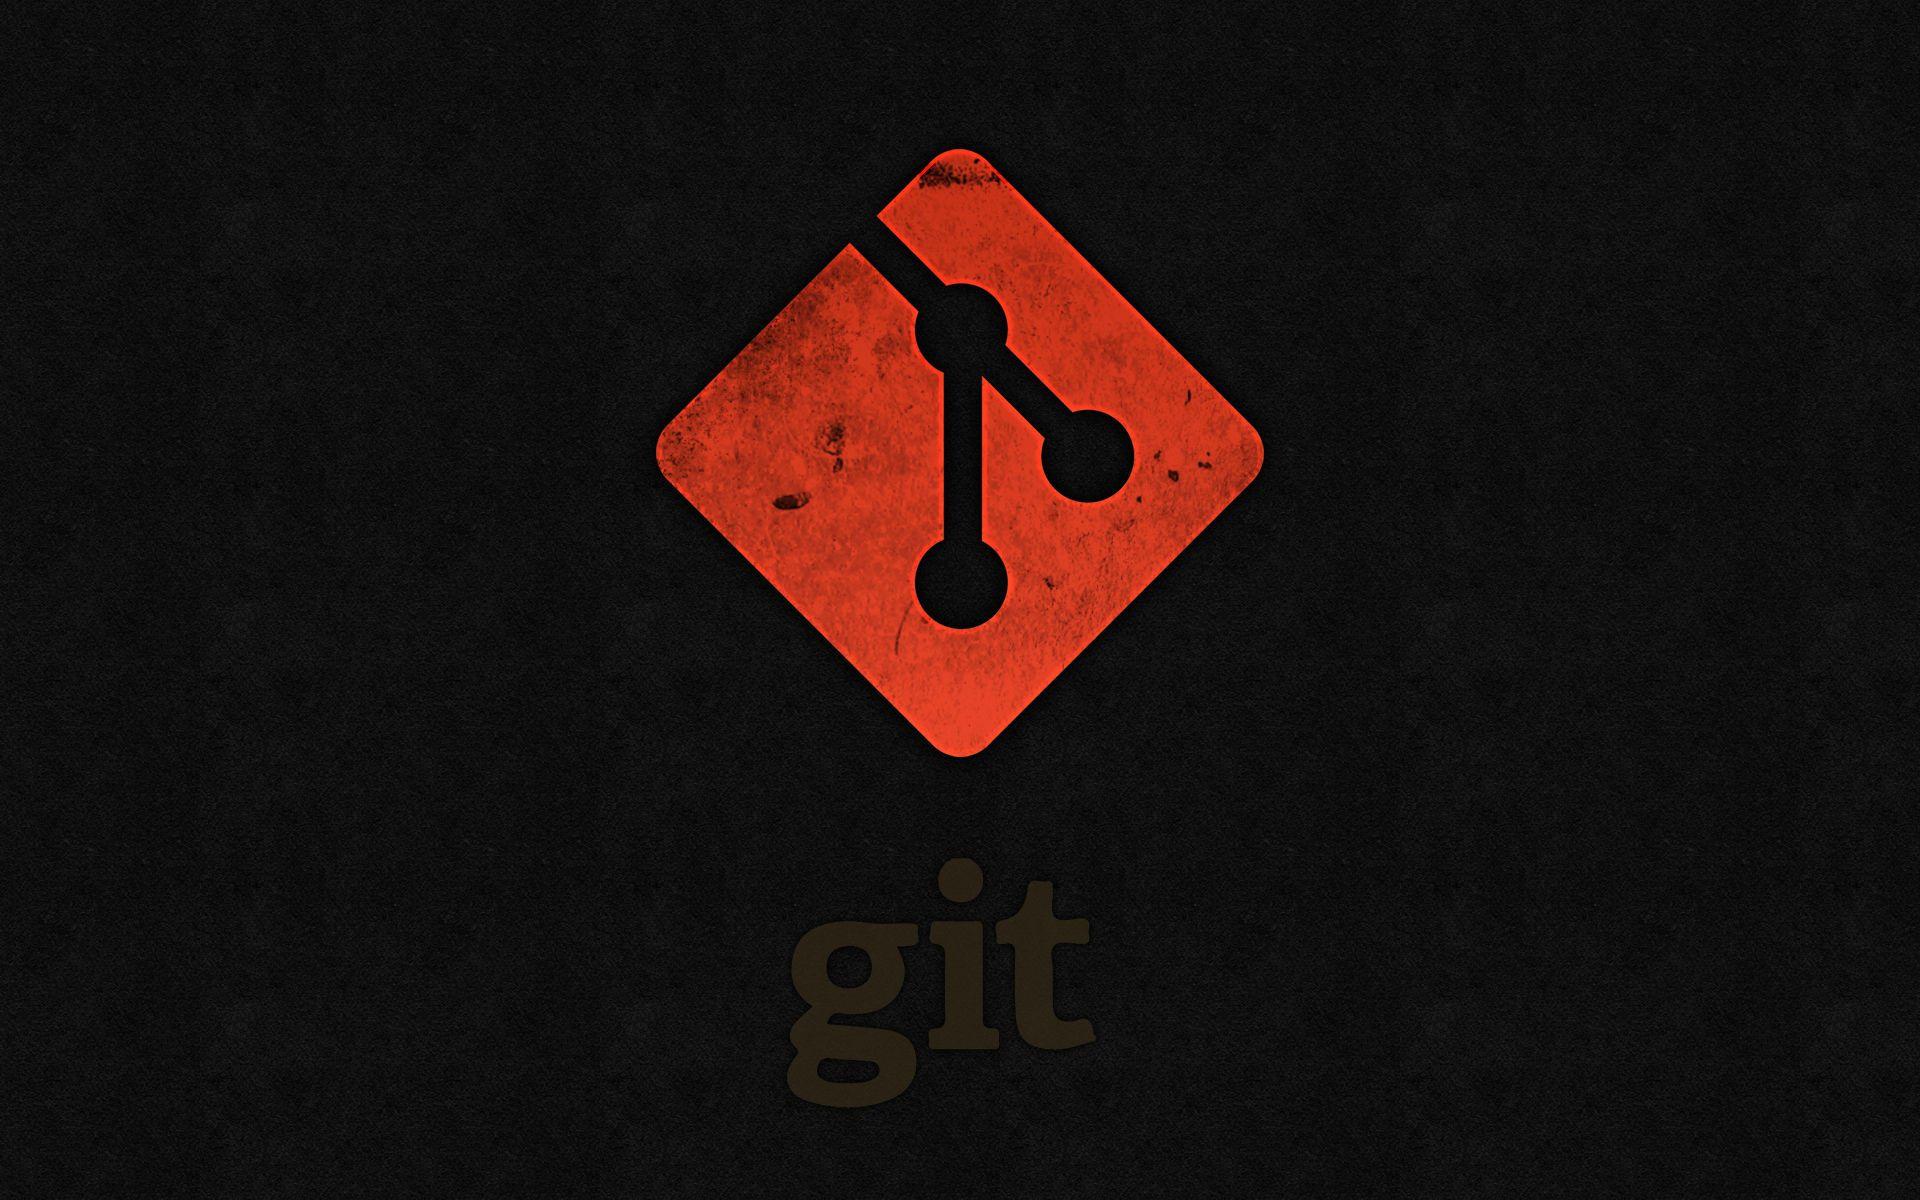 github for desktop download